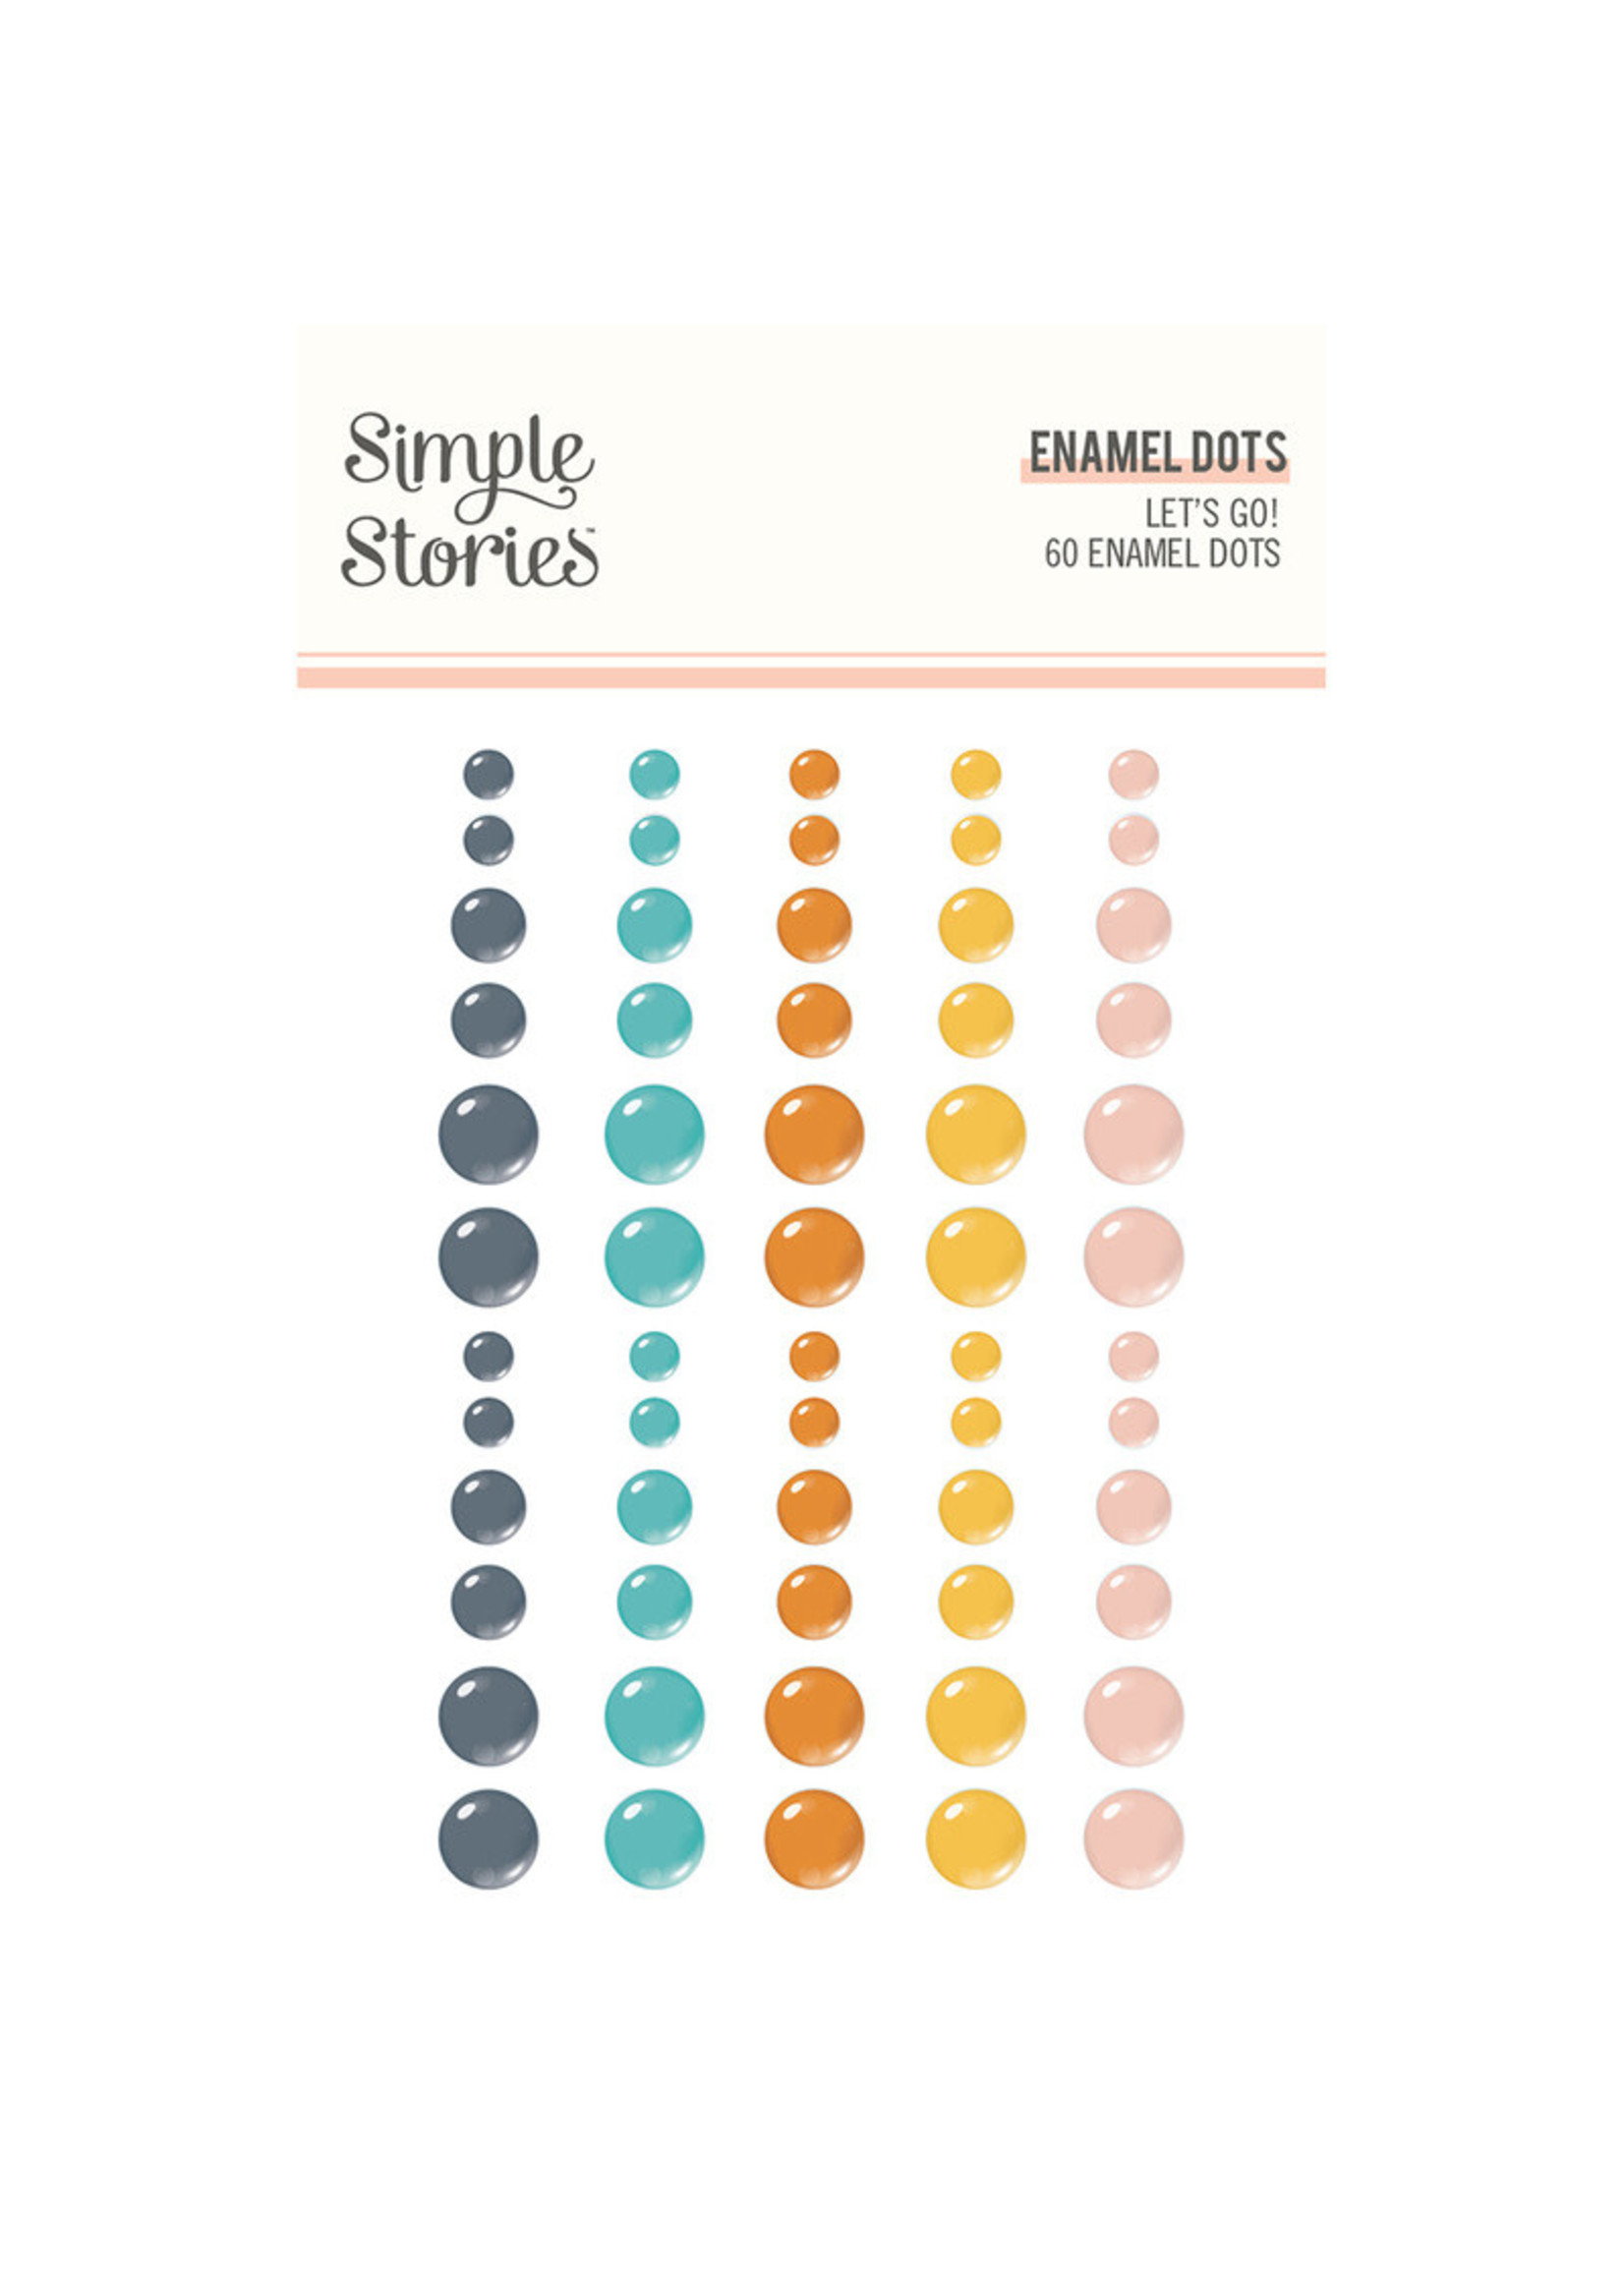 Simple Stories Simple Stories Enamel Dots, Let's Go